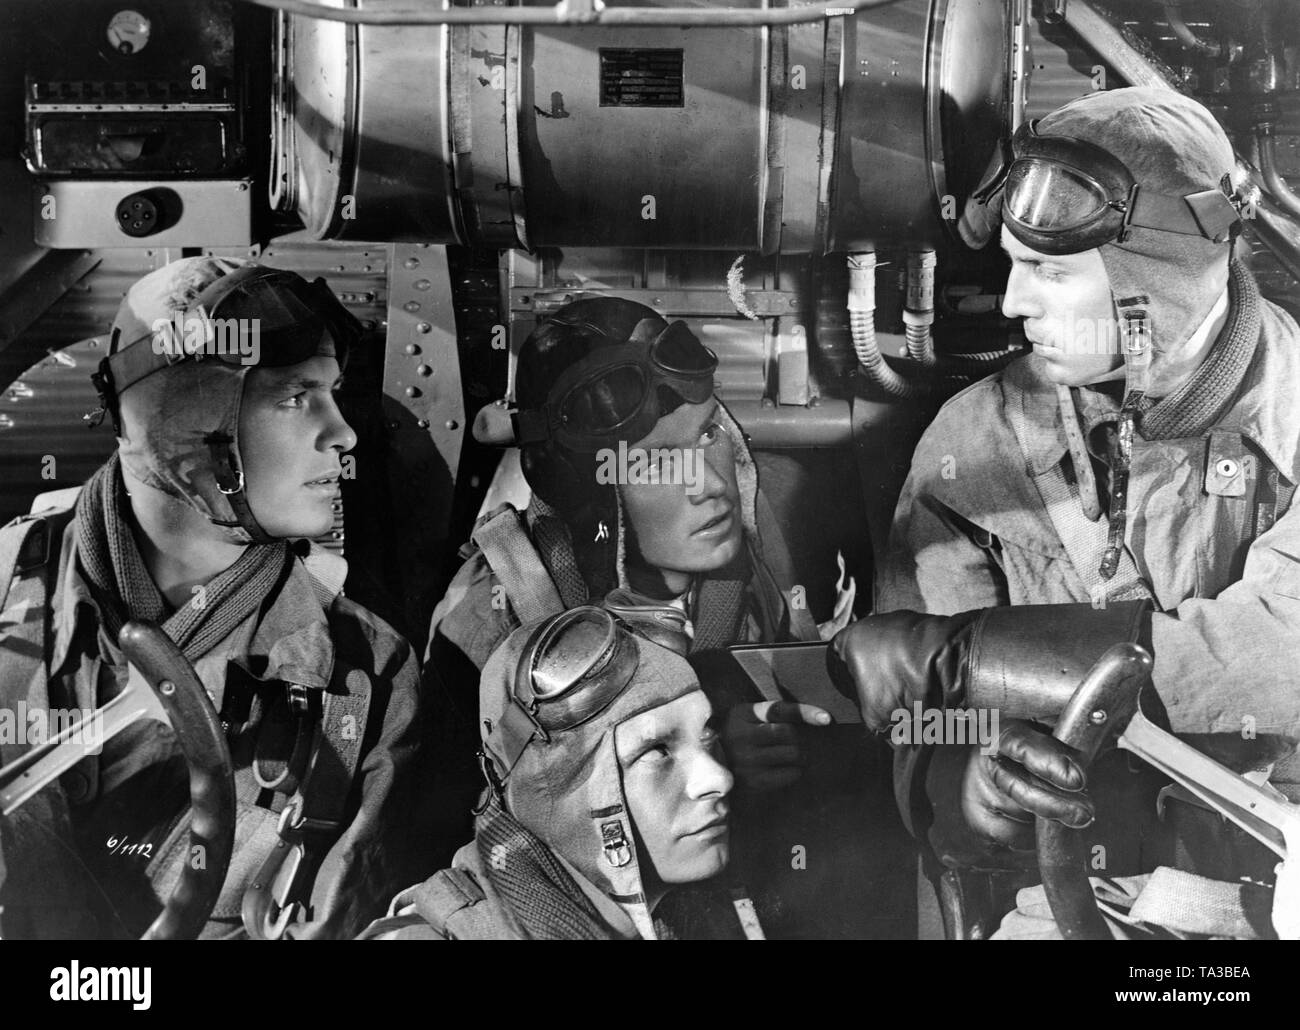 Quatre soldats de la Luftwaffe dans le cockpit d'un Junkers JU-52. C'est un moviestill à partir de la guerre et de la propagande national-socialiste 'D film III 88', qui a été tourné en 1939 sous la direction de Herbert Maisch. Banque D'Images